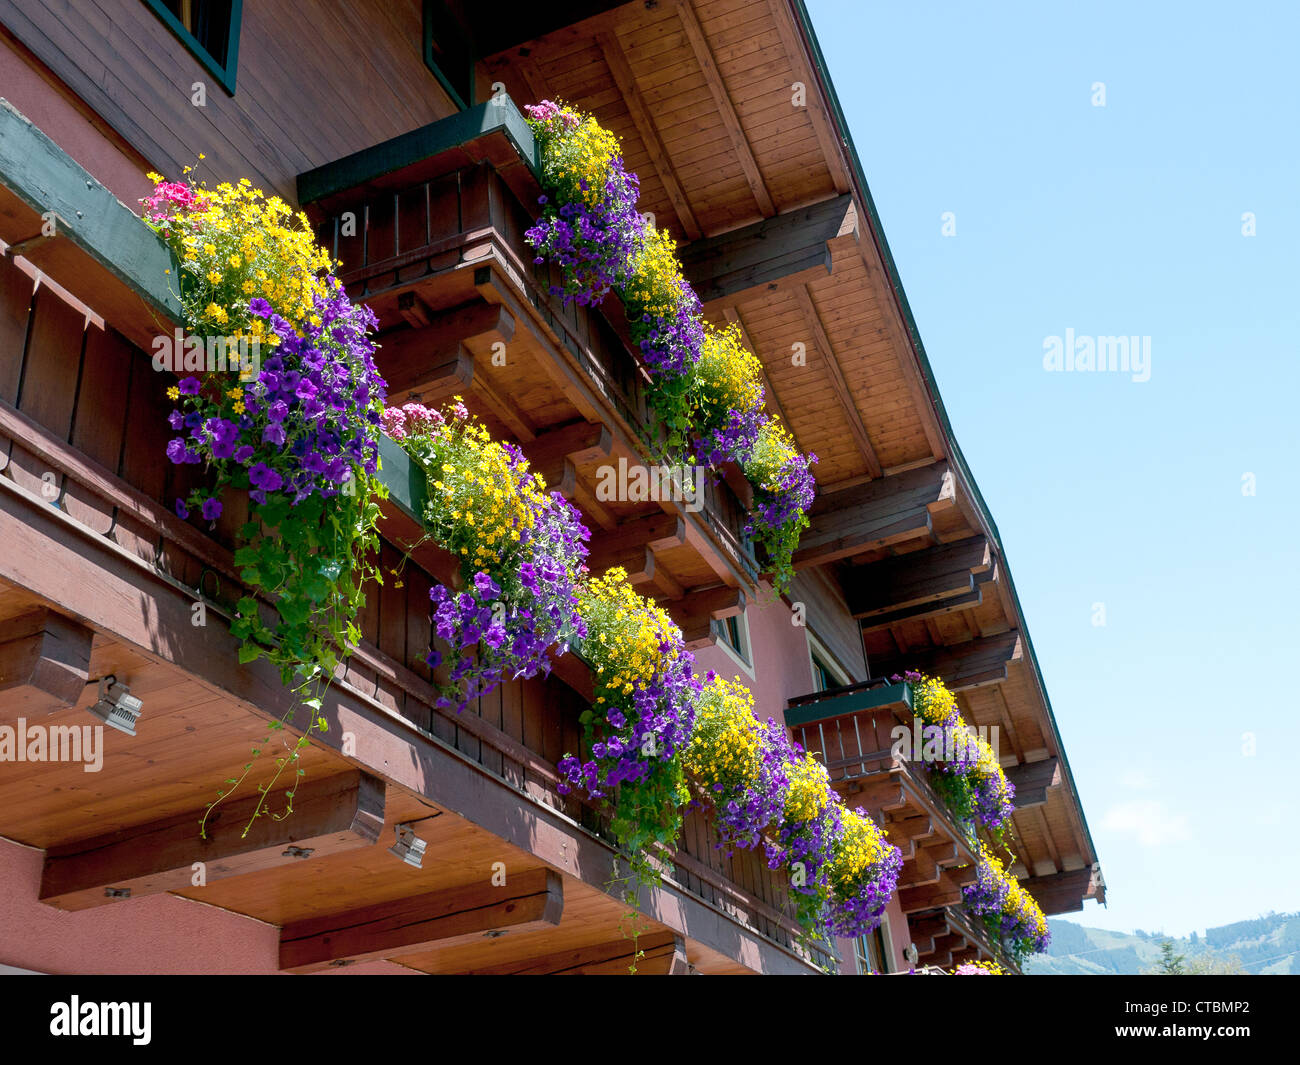 Bunten Blumenkästen auf einem typisch österreichischen Chalet-Stil-Haus in  Kaprun, Österreich Stockfotografie - Alamy